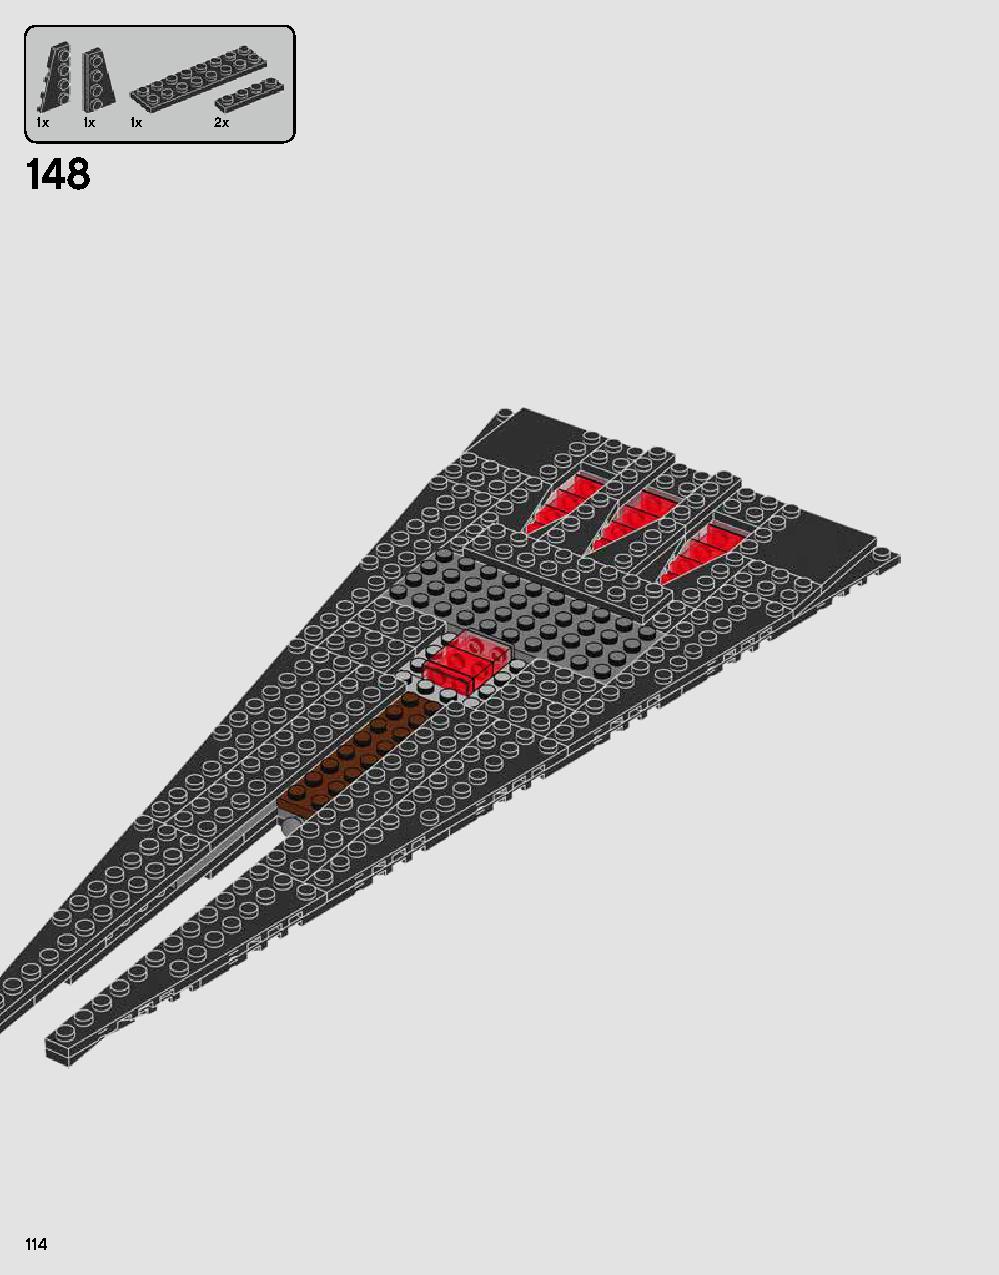 ダース・ベイダーの城 75251 レゴの商品情報 レゴの説明書・組立方法 114 page